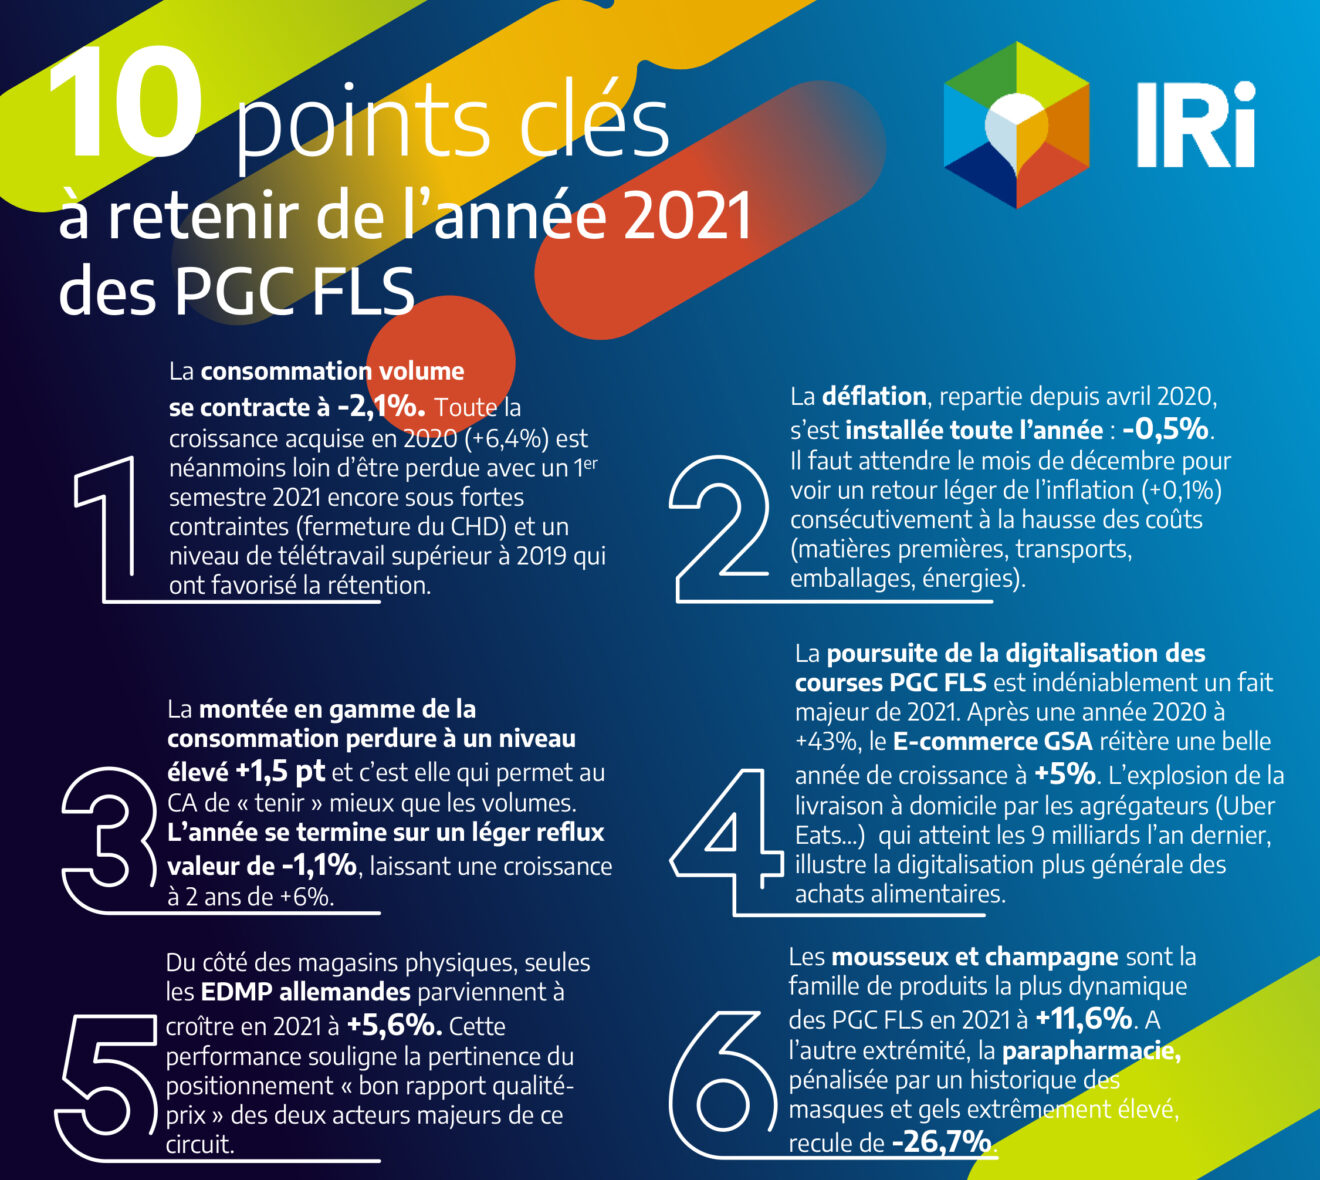 IRI : 10 points clés à retenir de l’année 2021 des PGC FLS